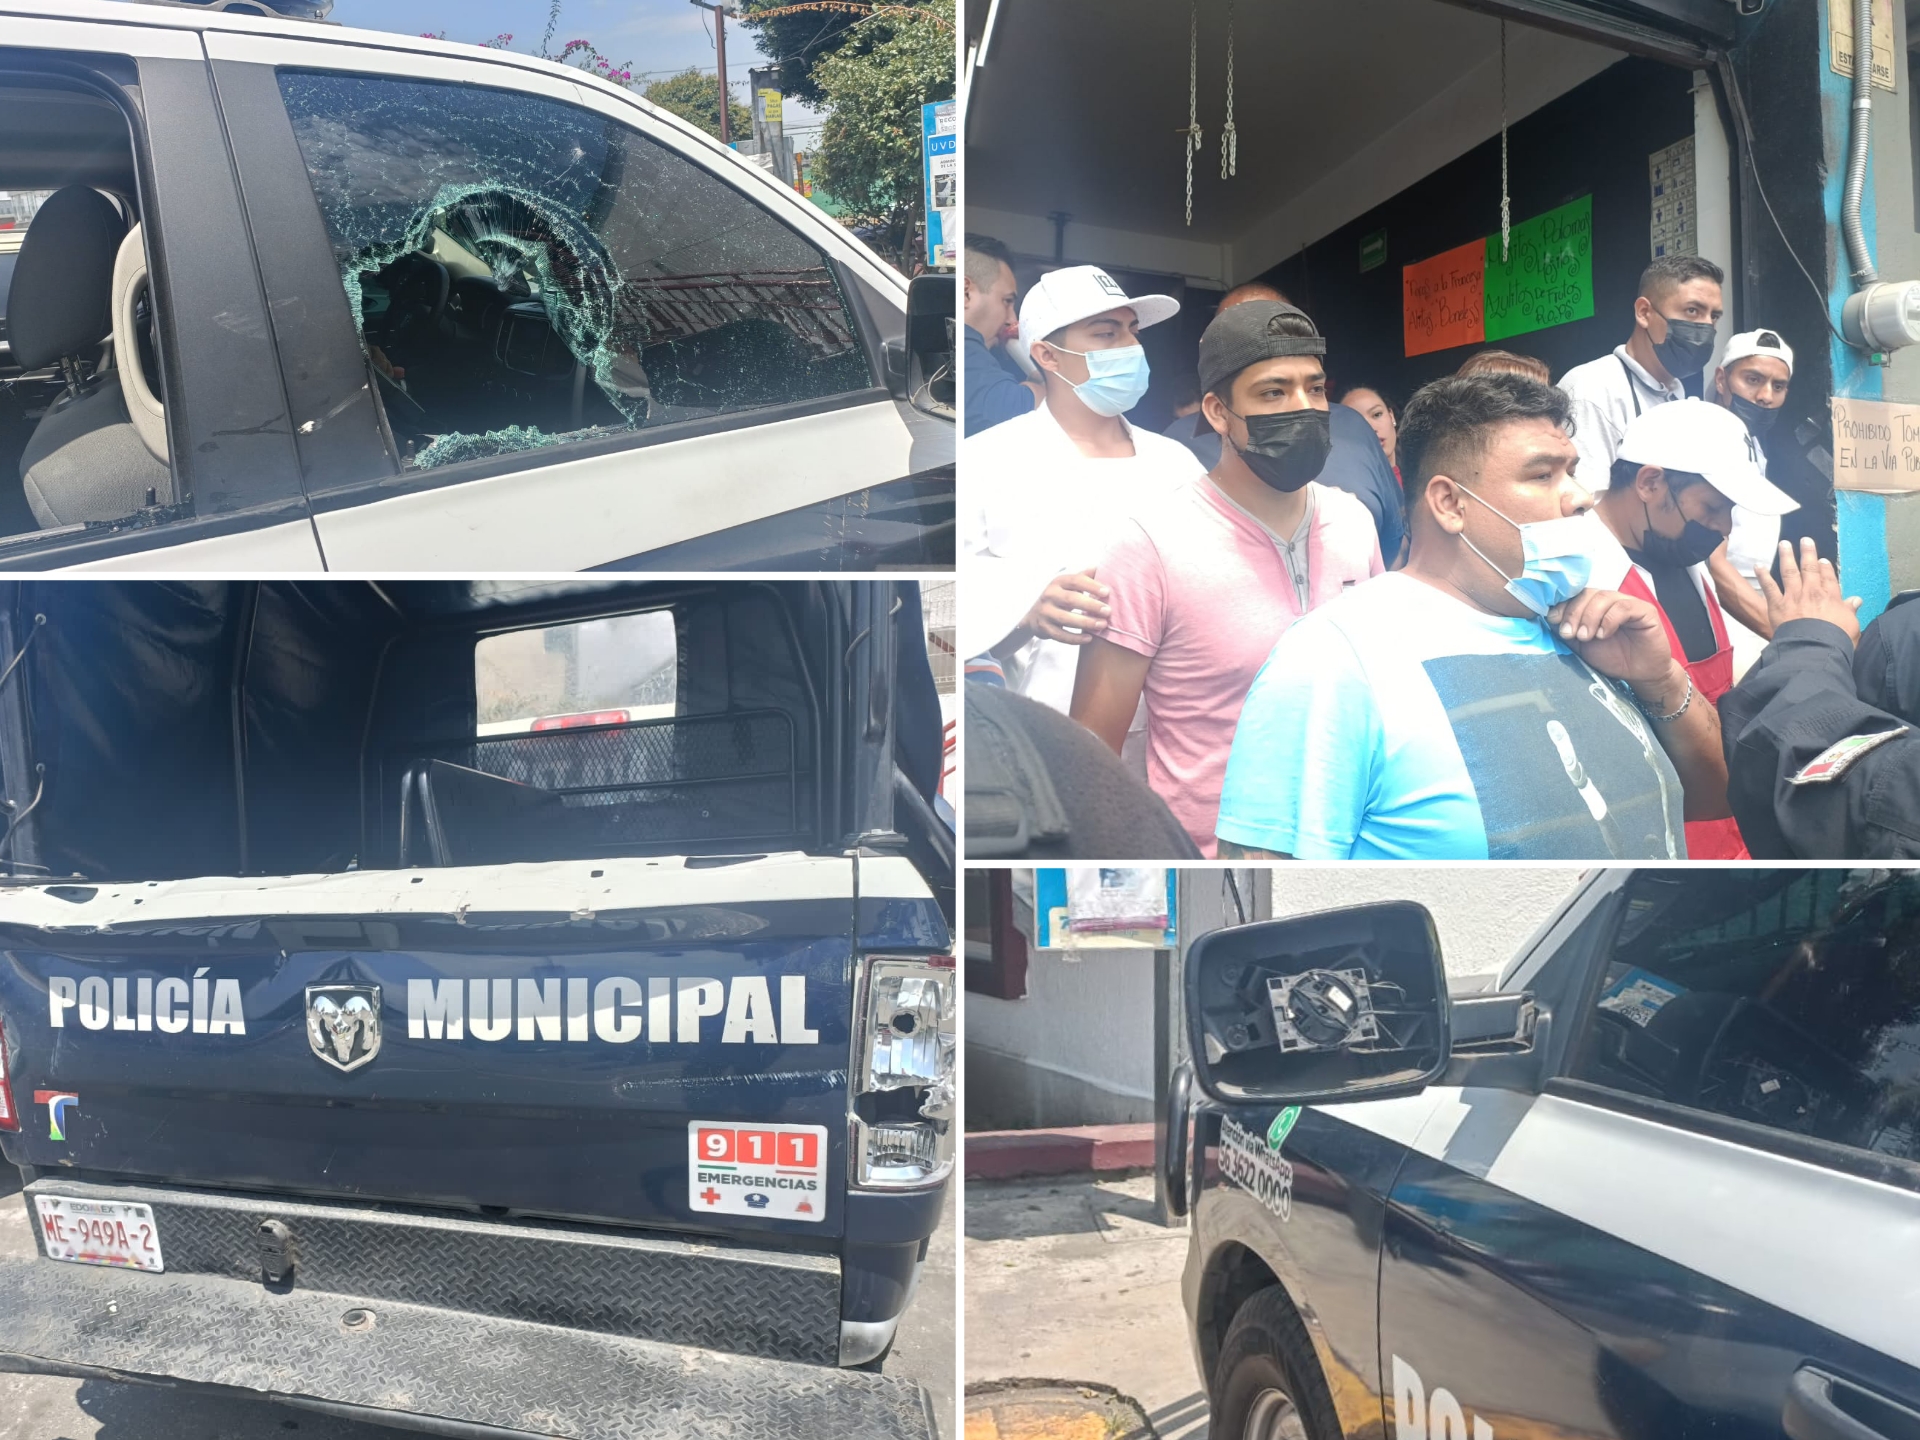 Comerciantes de Jacarandas y autoridades se enfrentan durante operativo #regionmx 